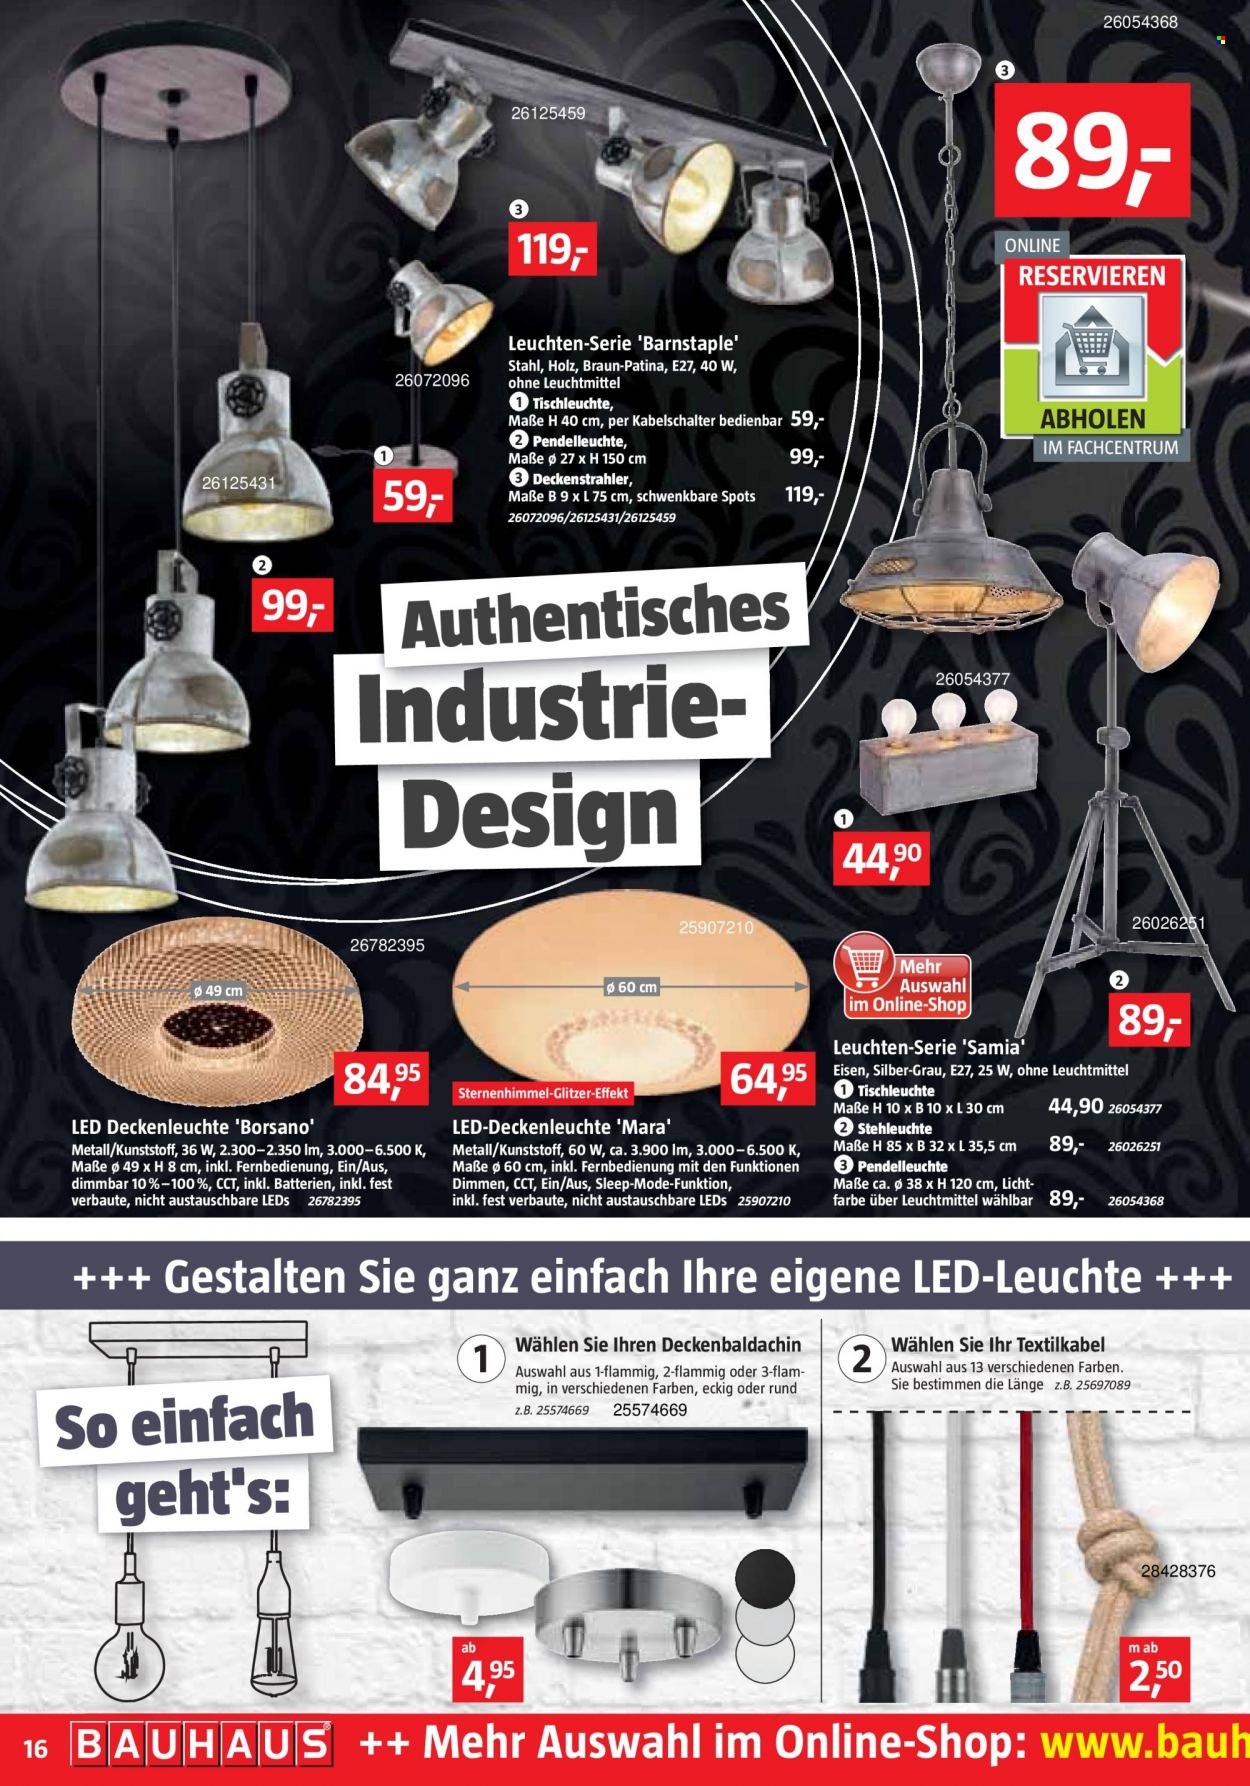 thumbnail - Prospekte Bauhaus - 4.09.2021 - 2.10.2021 - Produkte in Aktion - Braun, LED Light, Deckenleuchte, Tischlampe, Pendelleuchte, LED-Deckenleuchte, Holz. Seite 16.